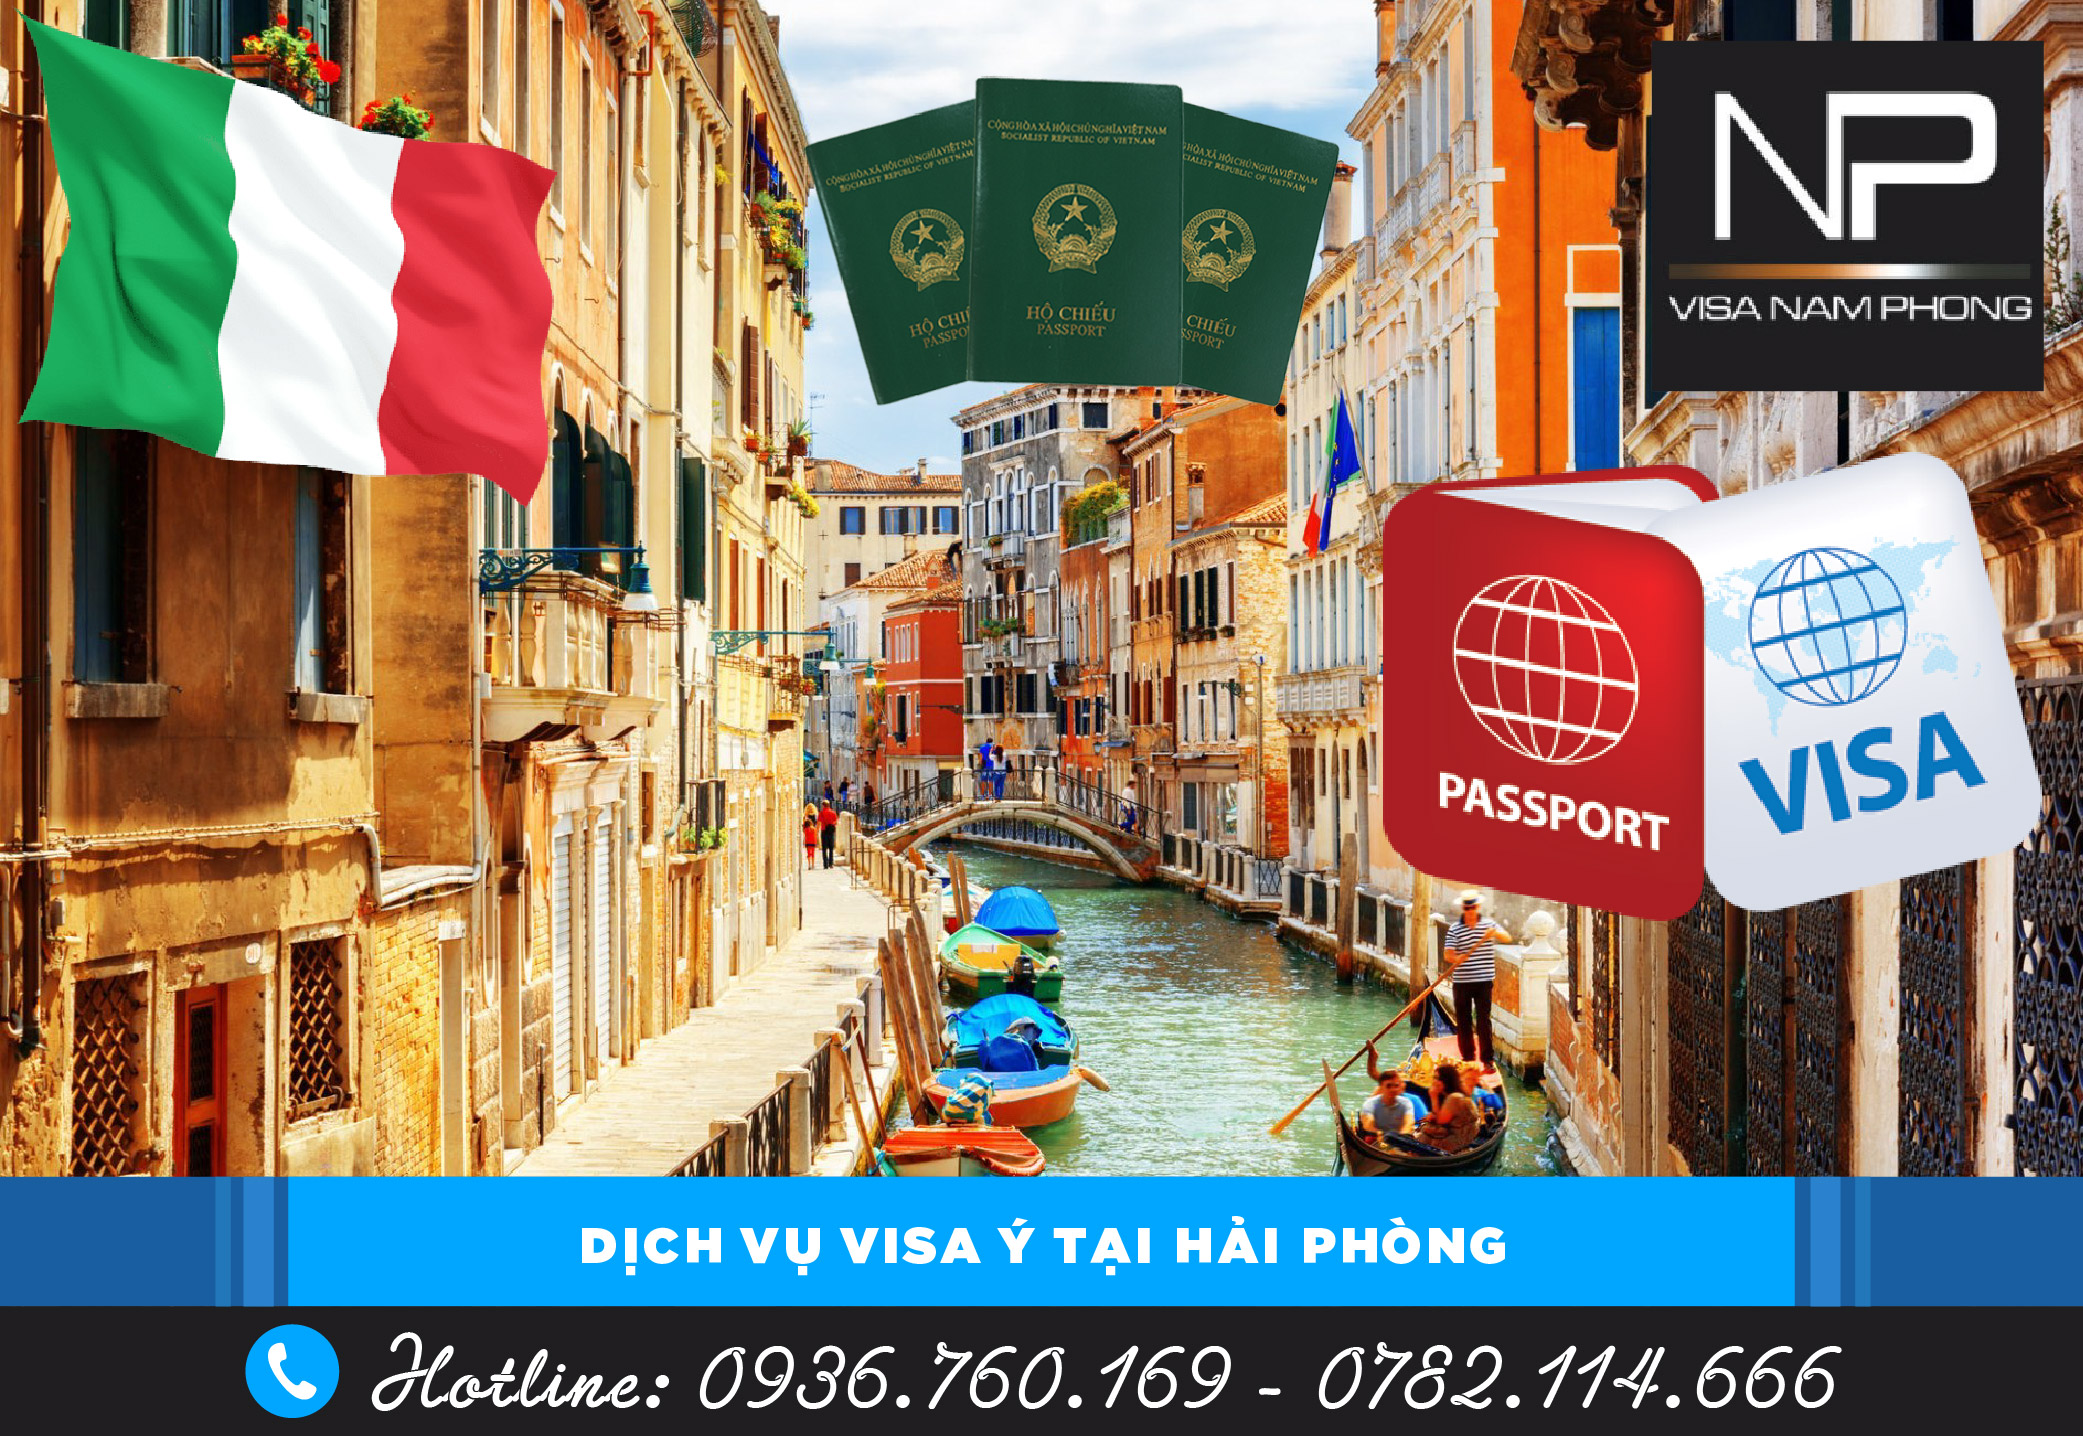 Dịch vụ visa Ý tại Hải Phòng